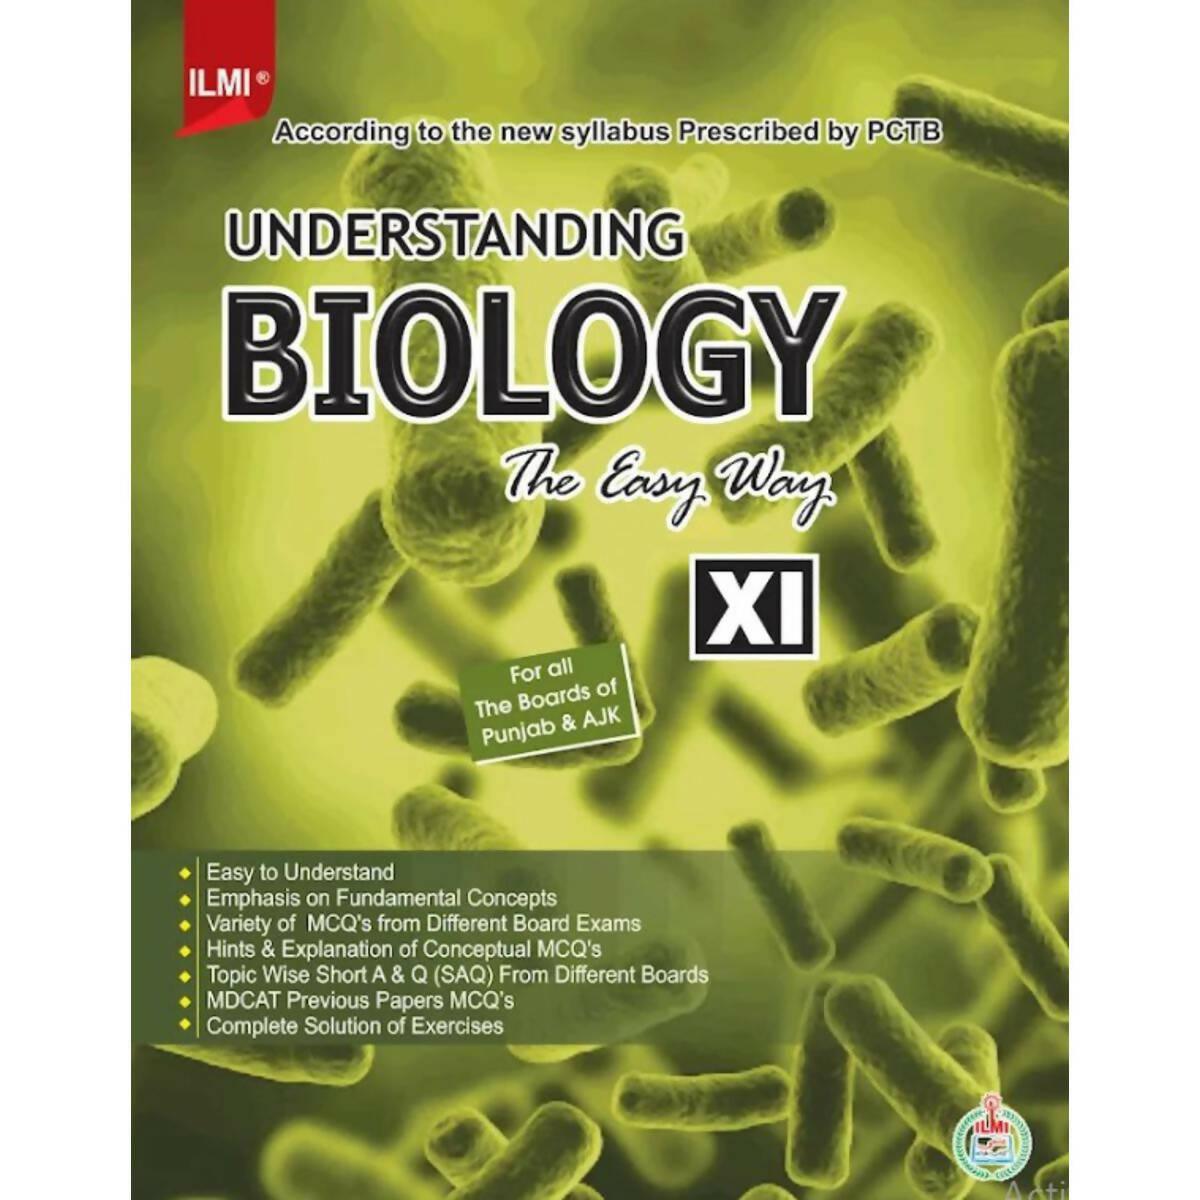 Understanding Biology 11 The Easy Way - ValueBox